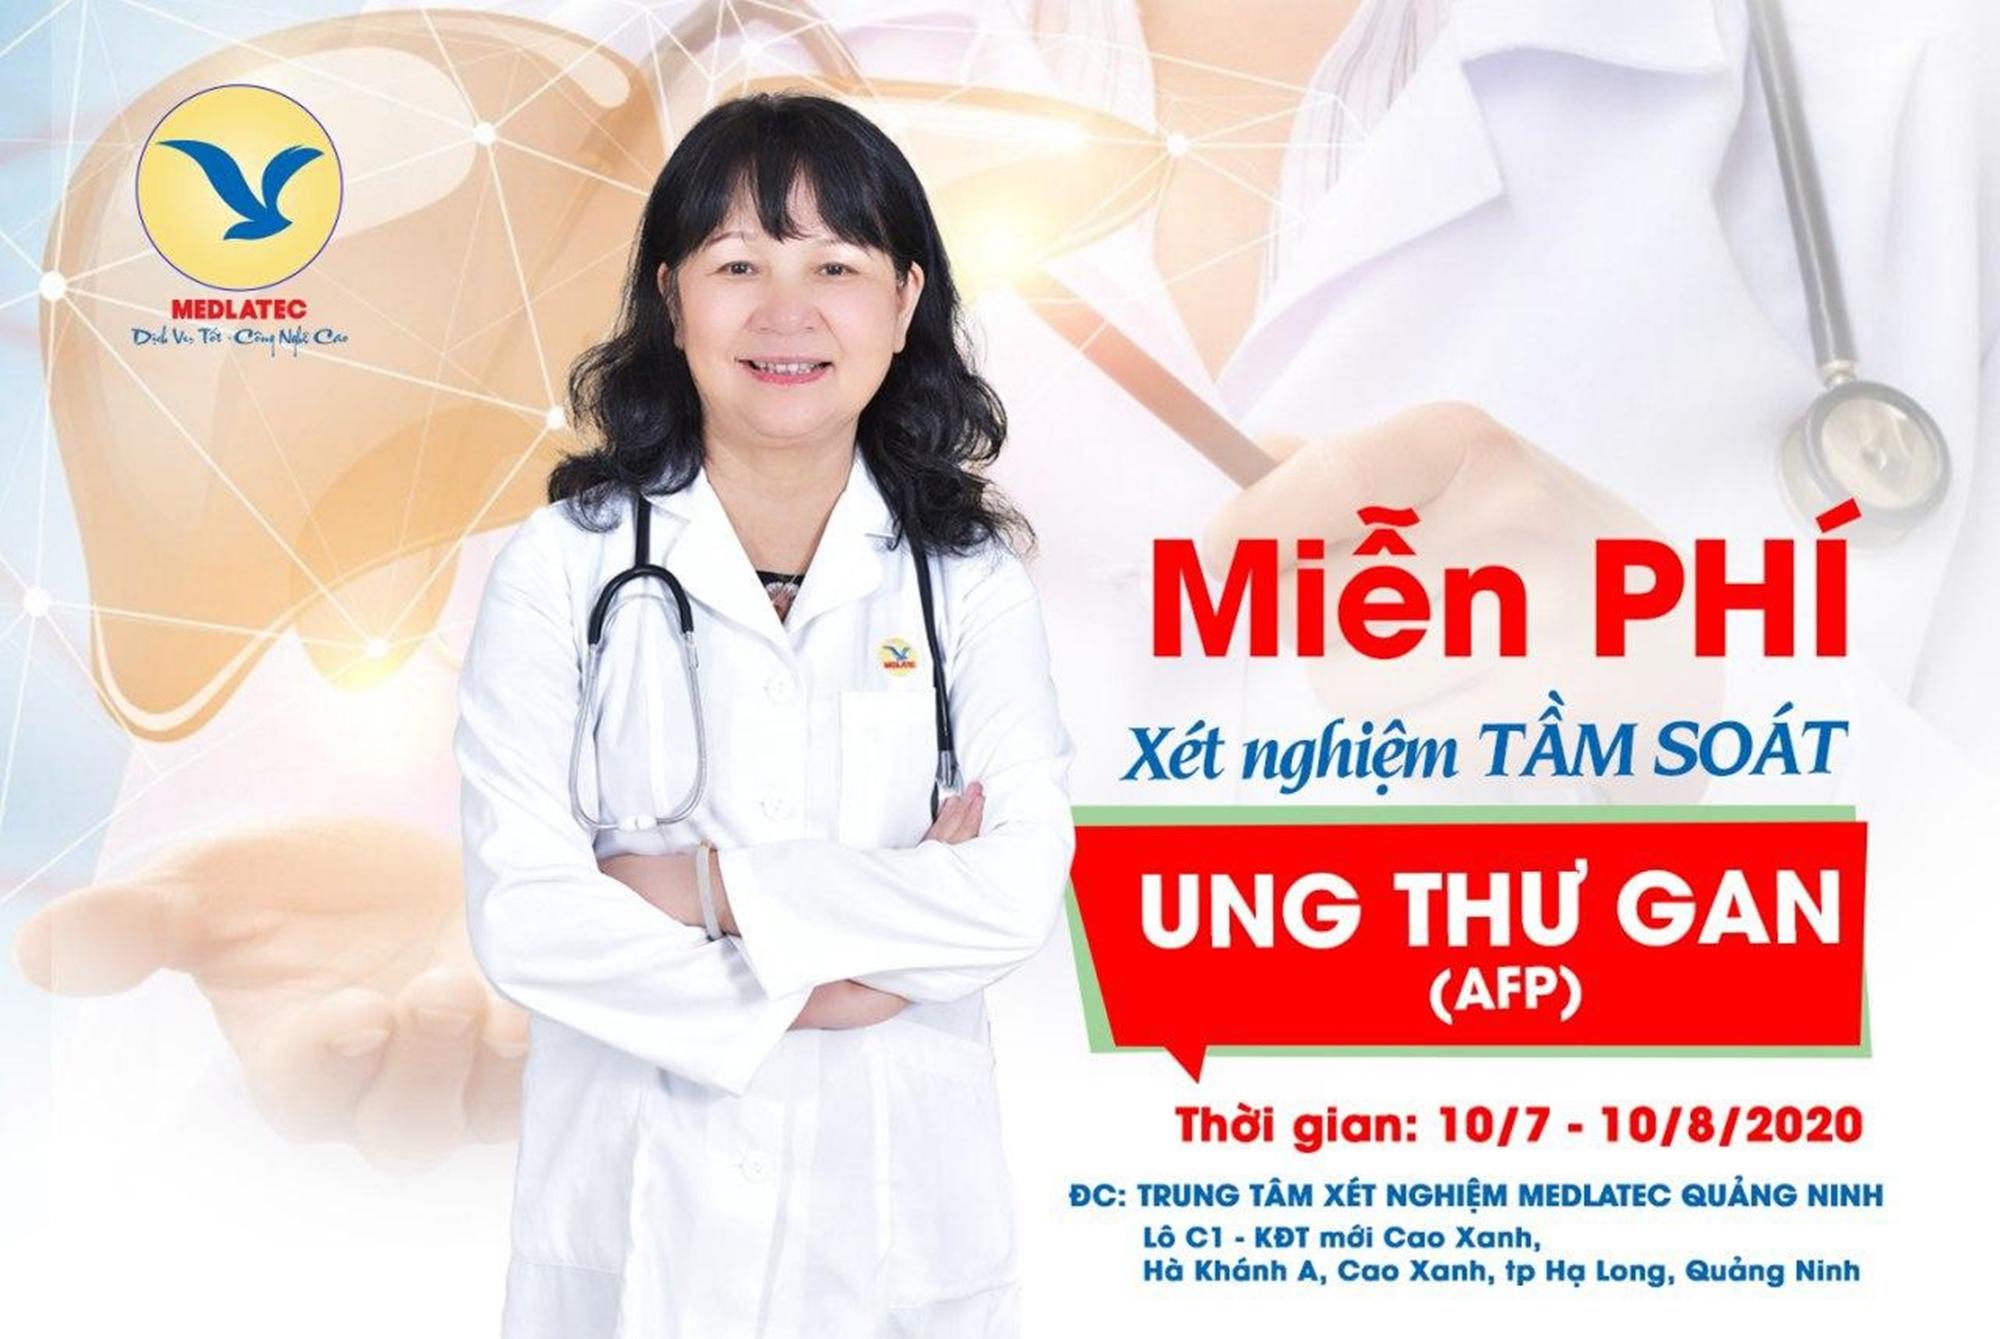 Medlatec tặng 2.500 xét nghiệm AFP tầm soát ung thư gan sớm cho người dân Quảng Ninh.